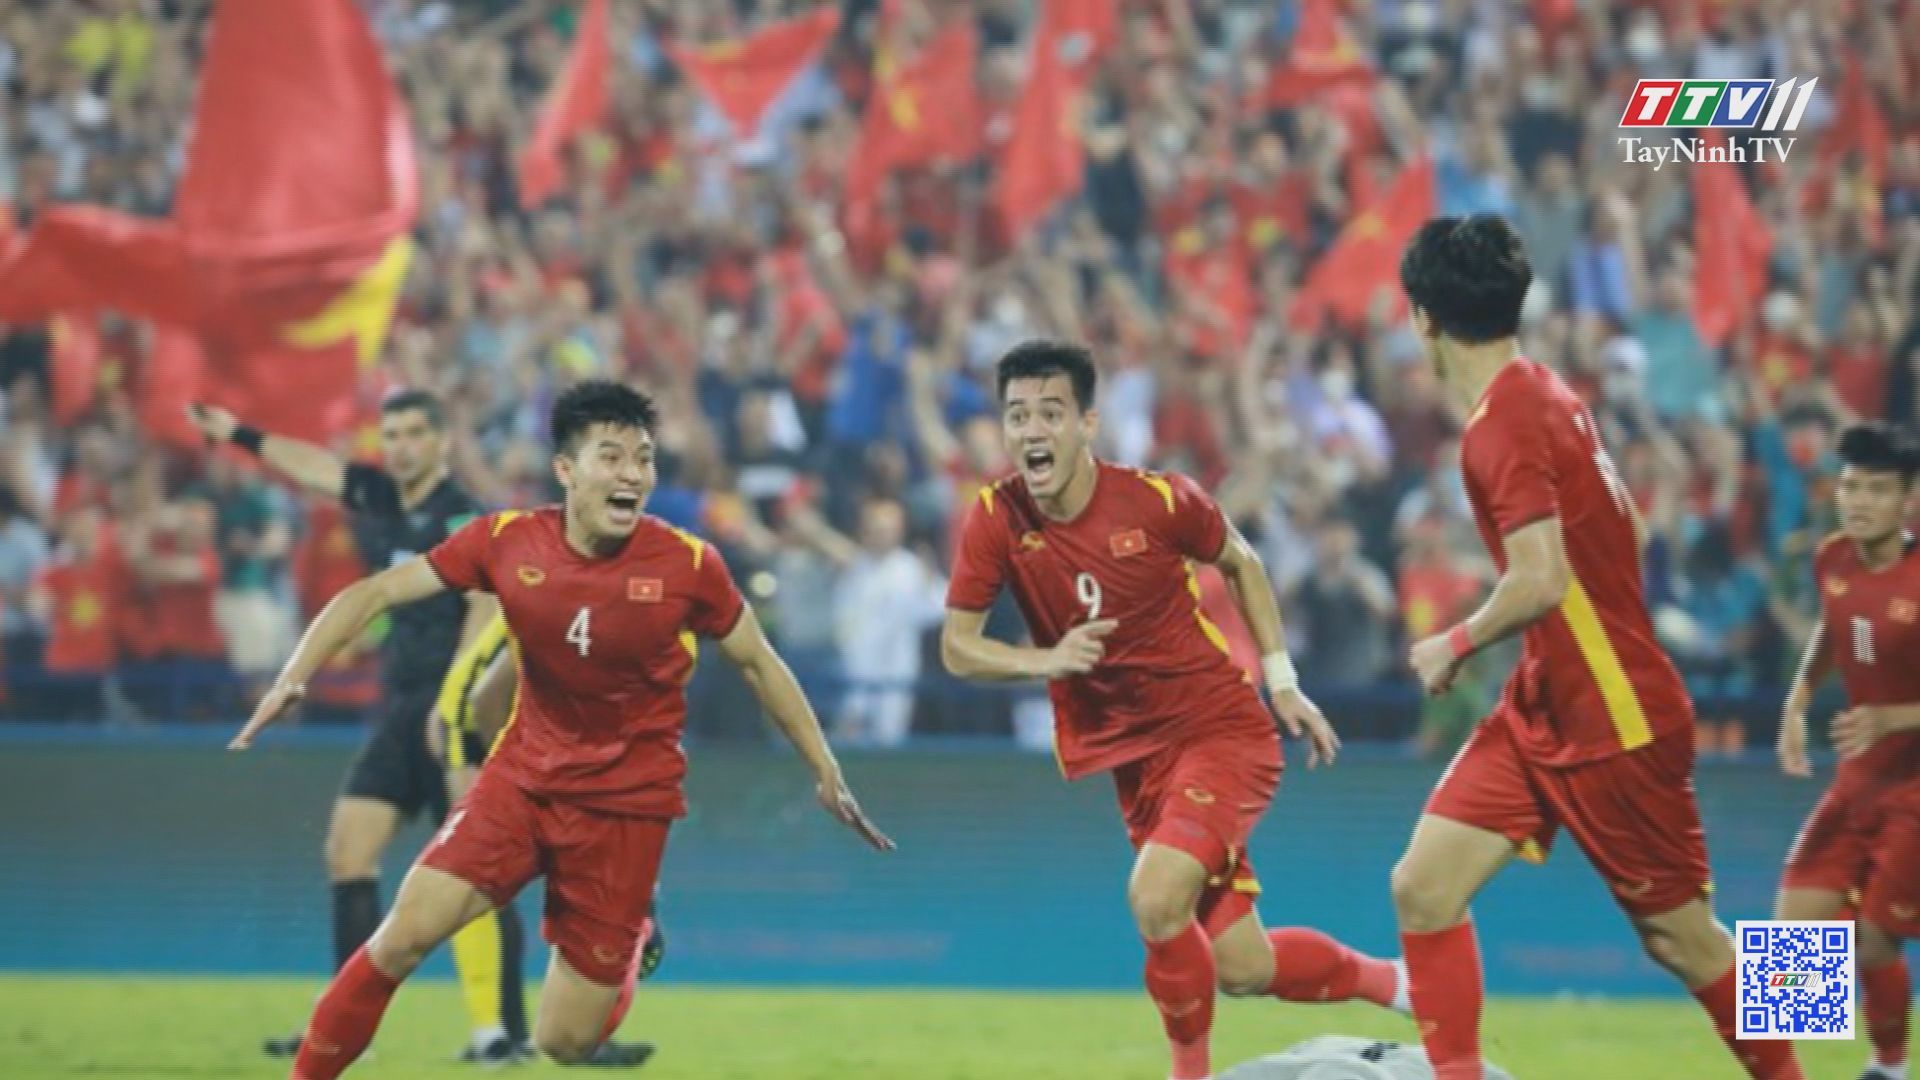 Tiến Linh tỏa sáng, U23 Việt Nam gặp Thái Lan ở chung kết SEA Games 31 | Hòa nhịp Sea Game | TayNinhTVE